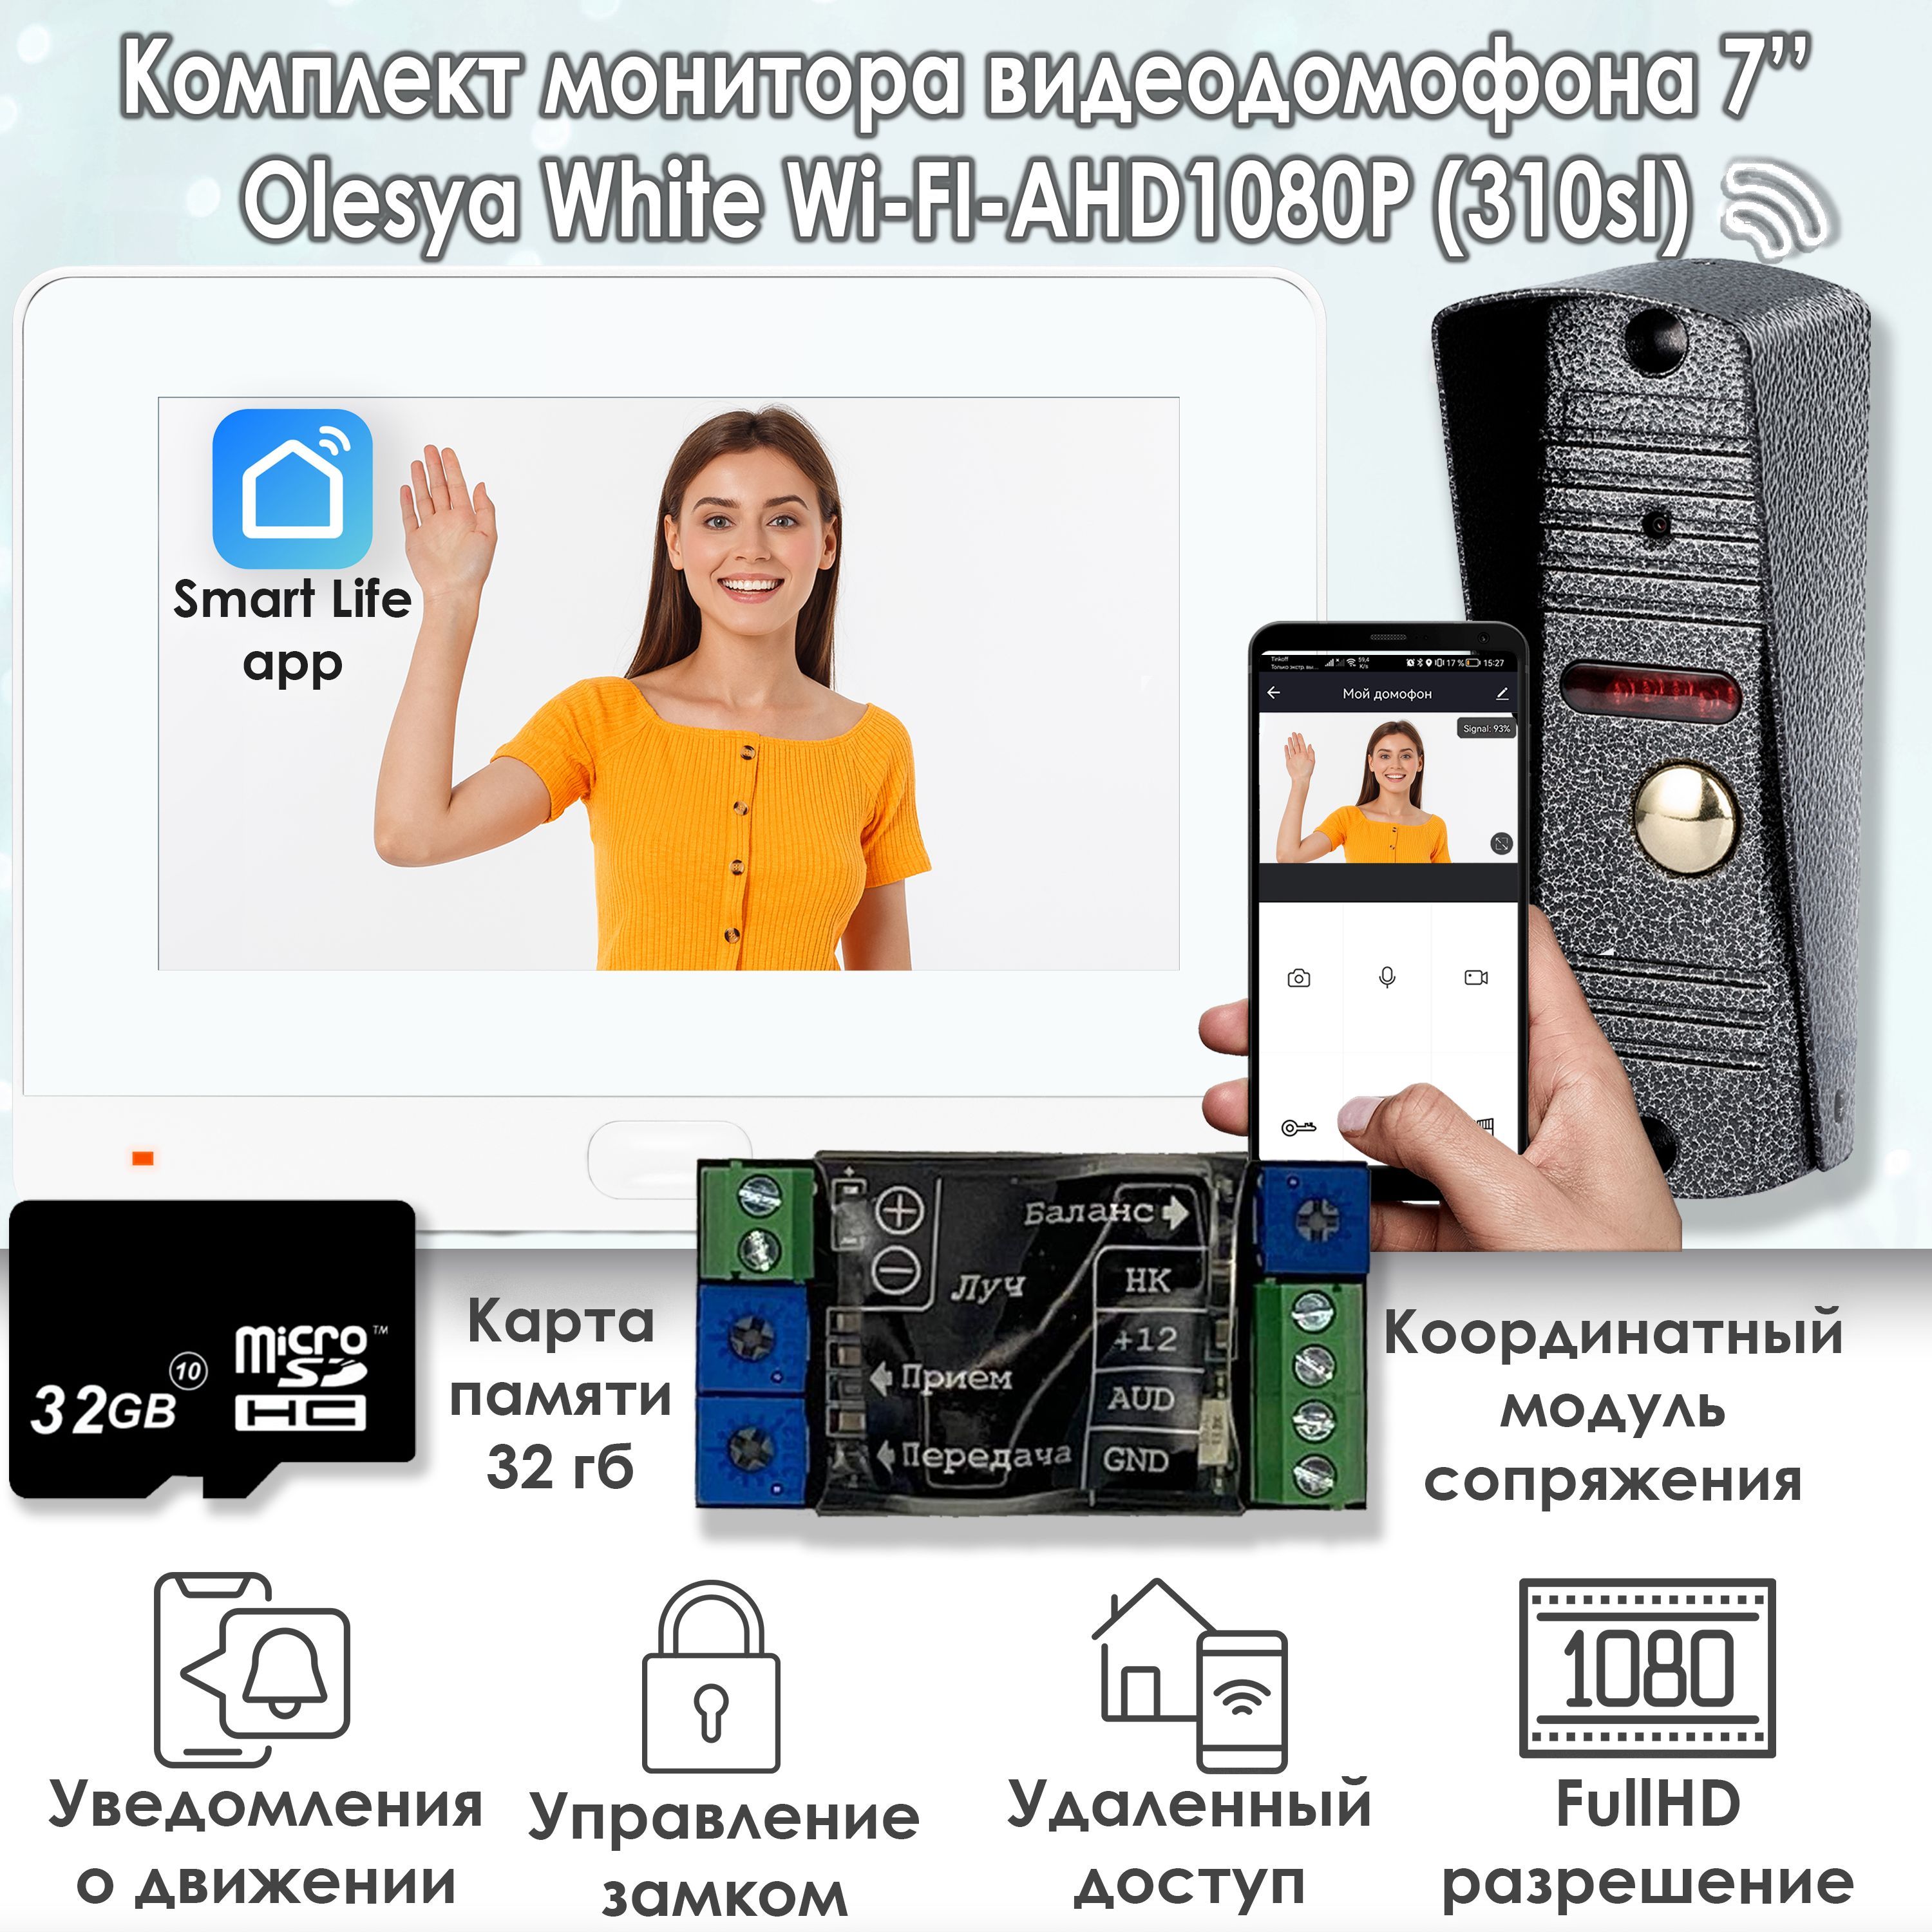 Комплект видеодомофона Alfavision Olesya Wi-Fi AHD1080P Full HD (310sl), Белый